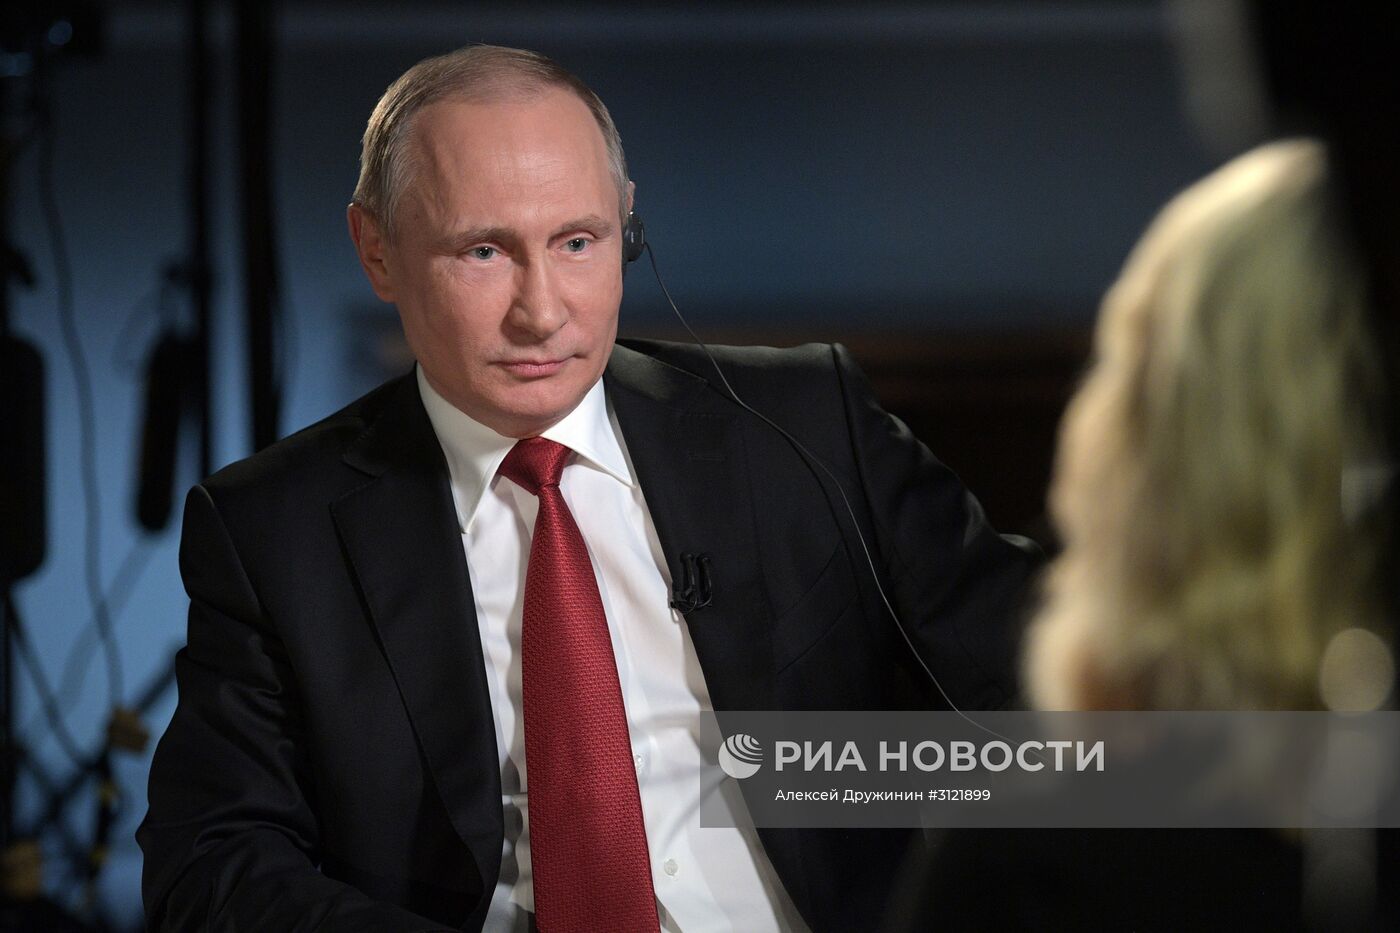 Президент РФ В. Путин дал интервью американскому телеканалу NBC